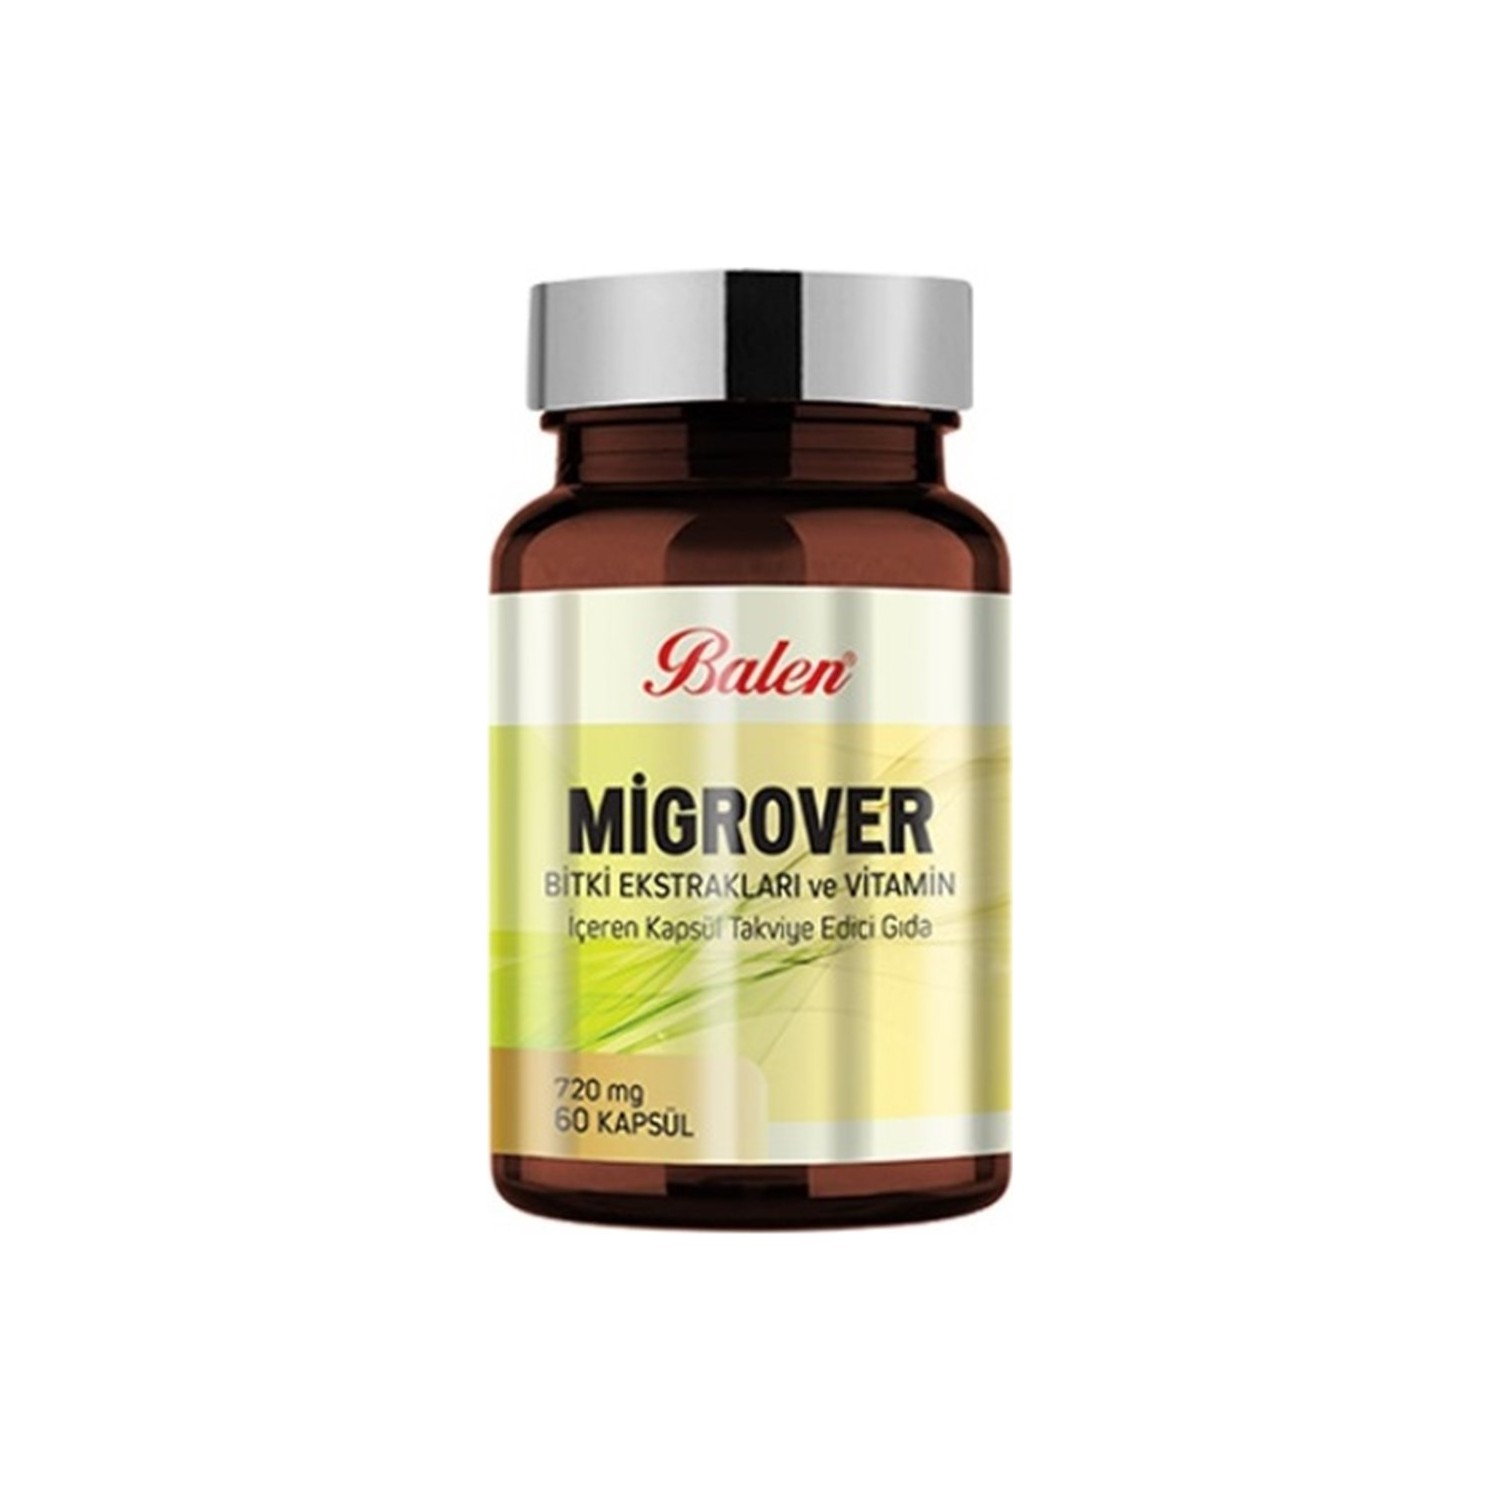 Капсулы Balen Migrover, содержащие растительные экстракты и витамины, 60 капсул, 720 мг, 3 штуки витамин c vibrant health 1000 мг 60 капсул